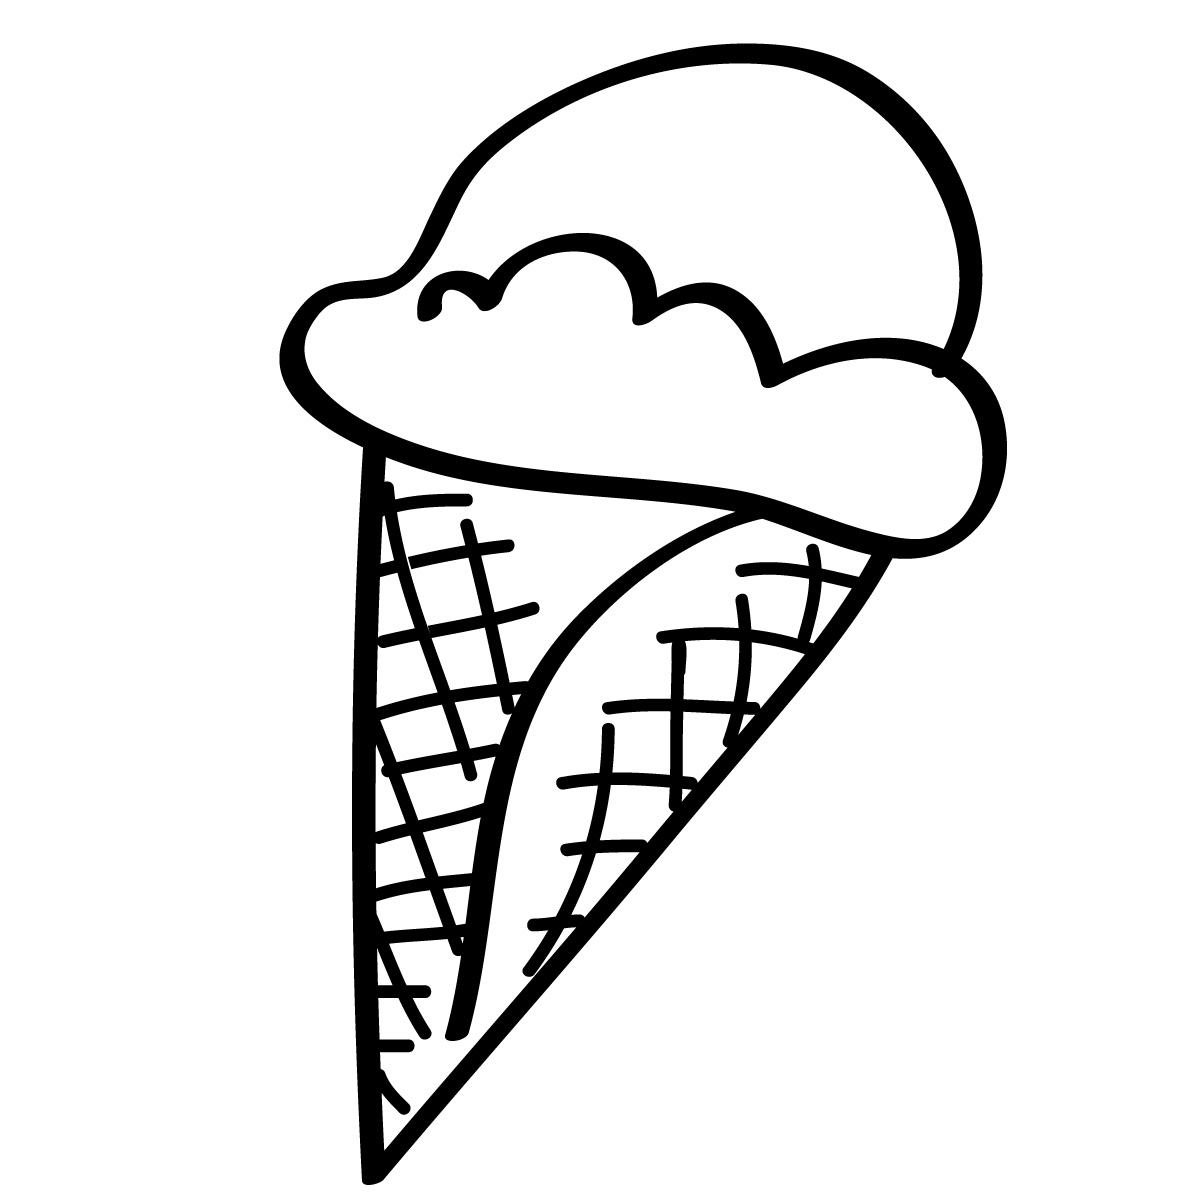 Clip Art Ice Cream - Tumundografico